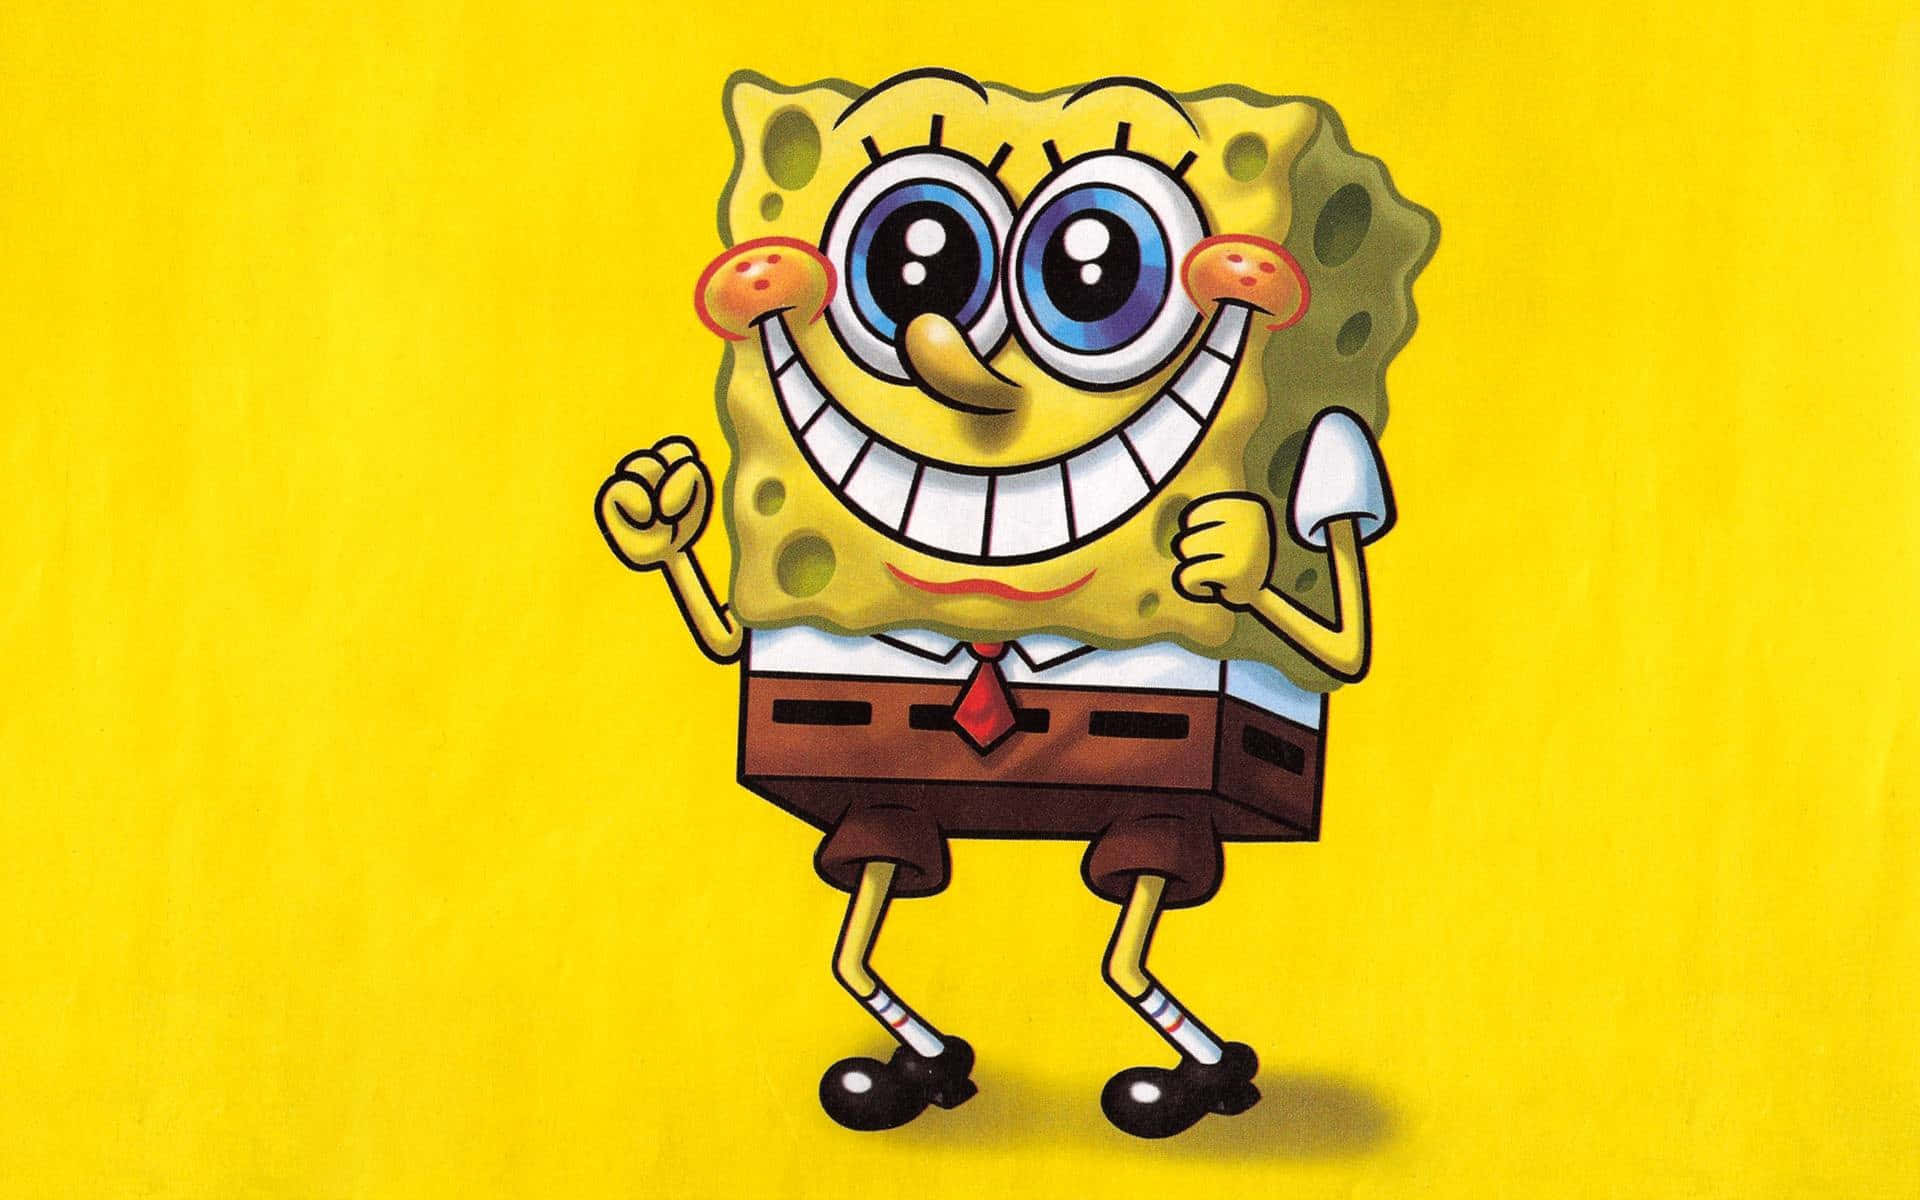 Spongebob looking proud and content